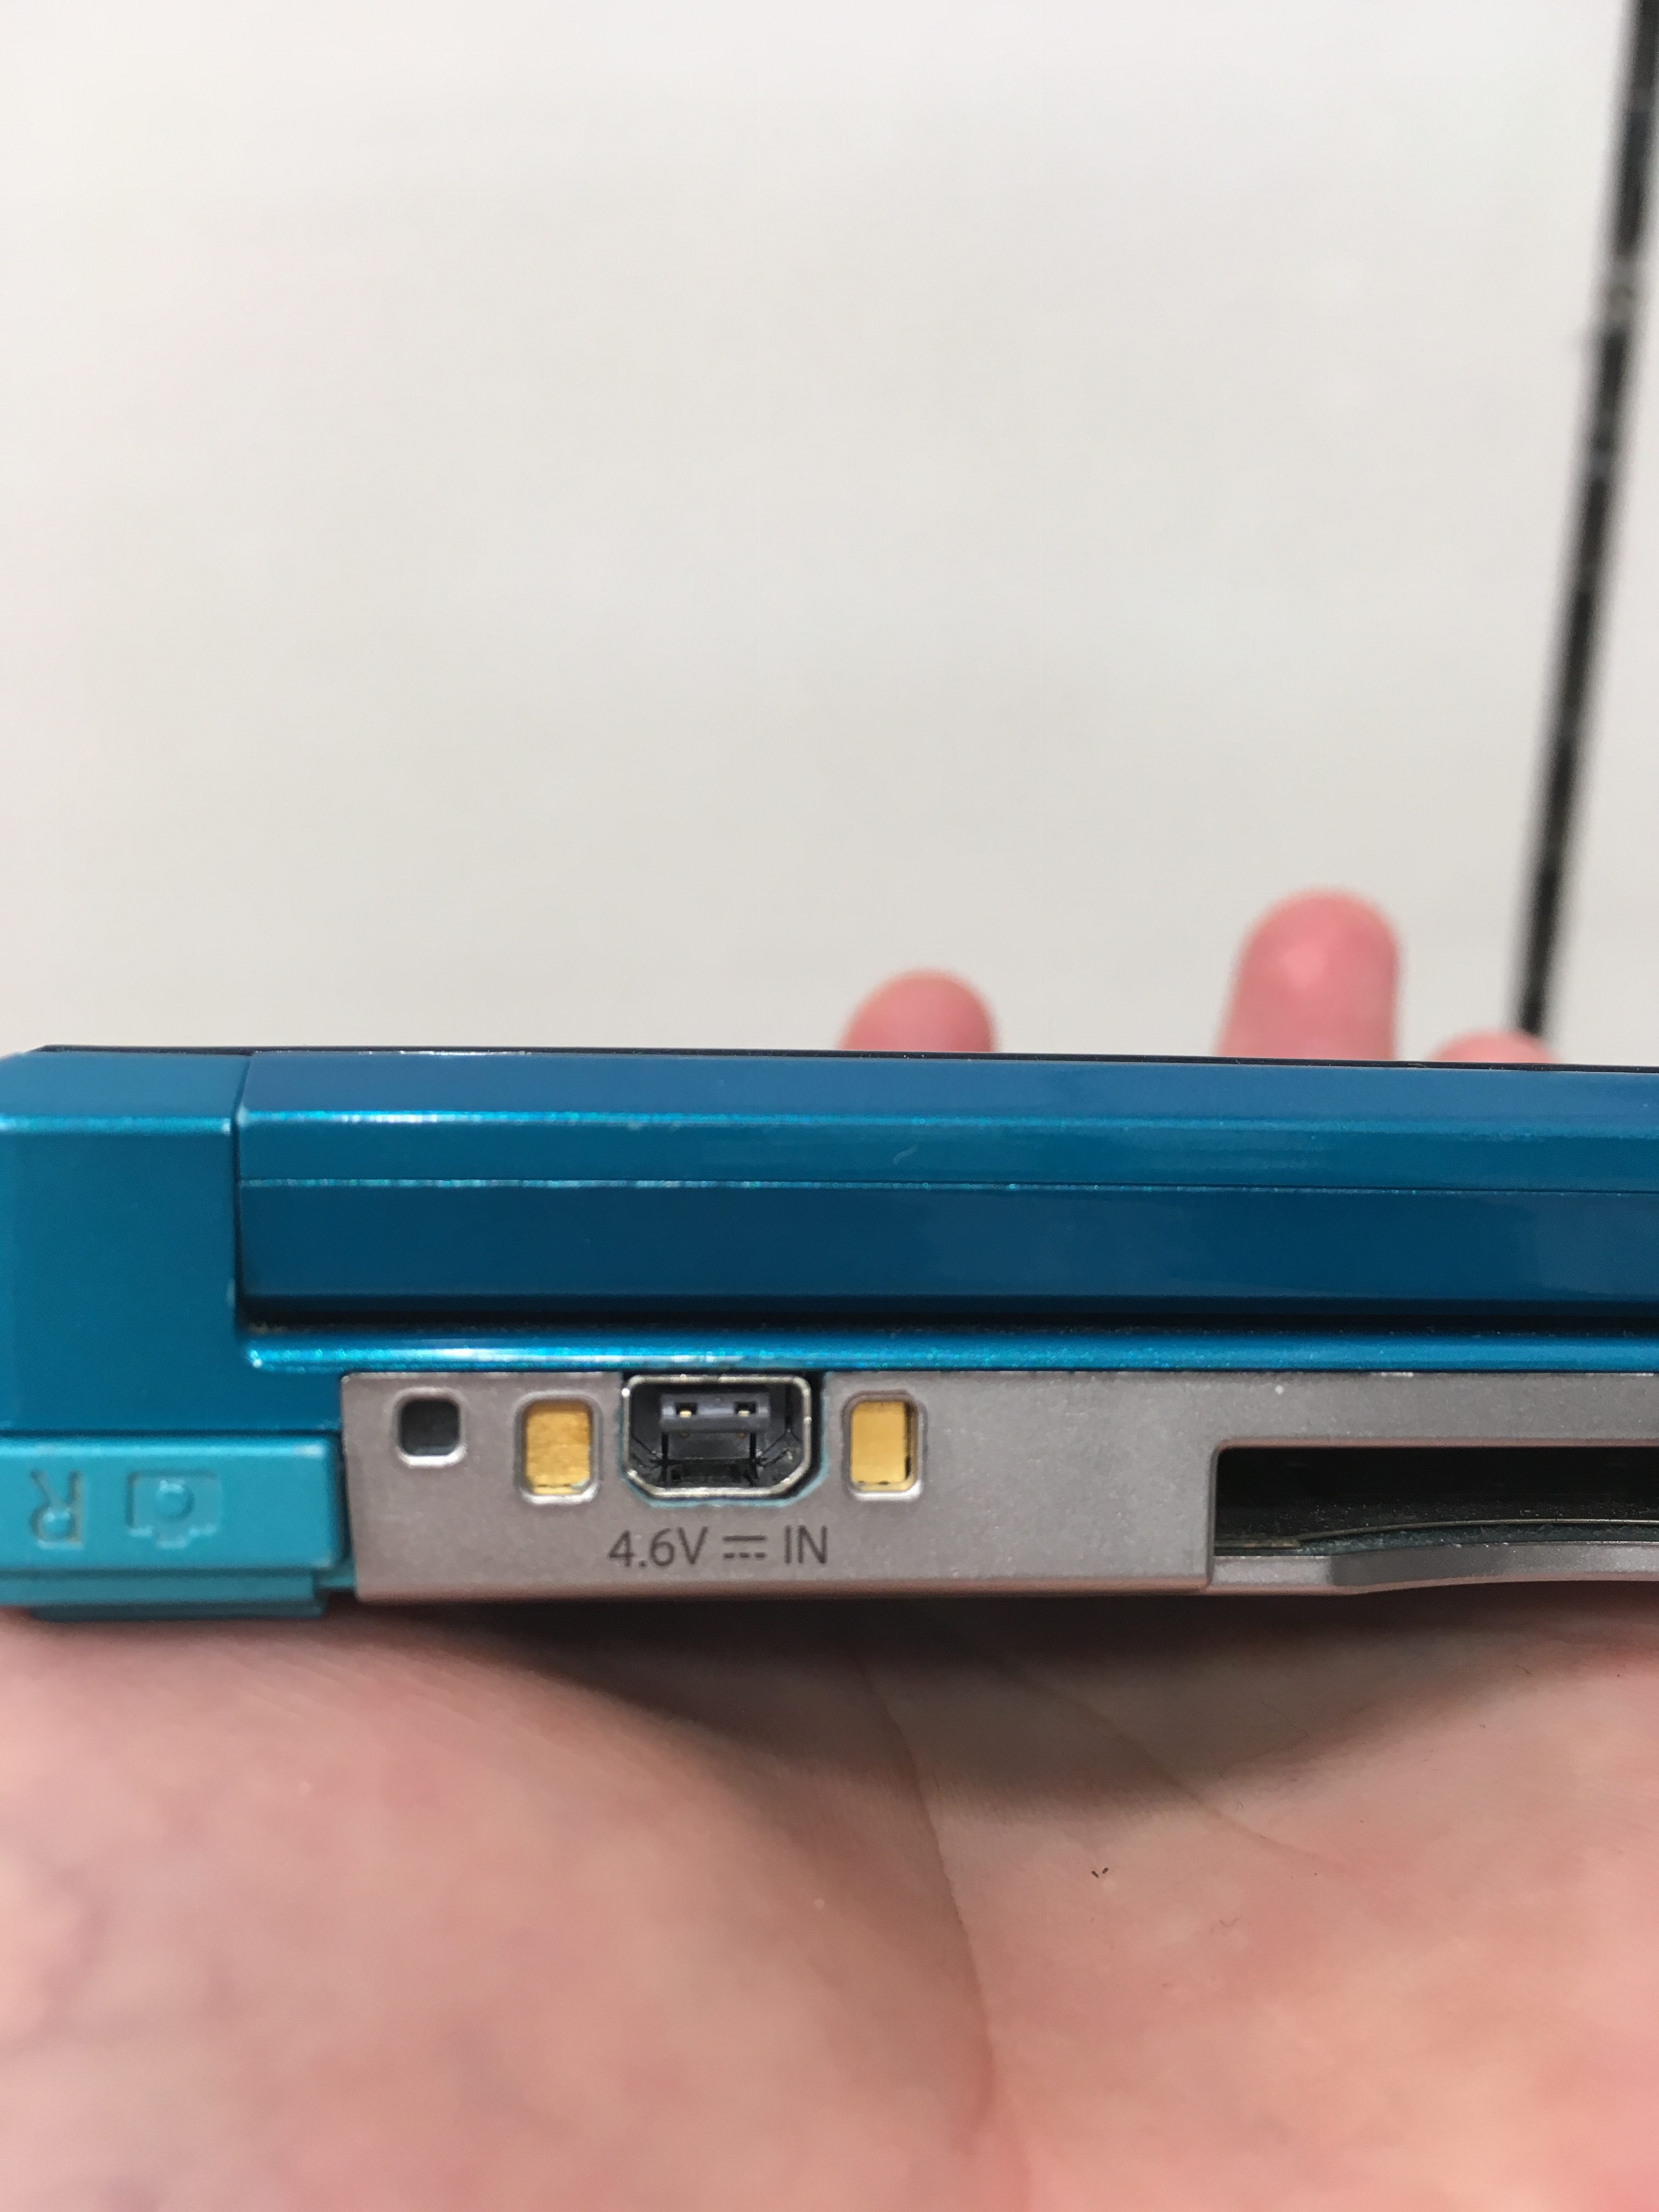 3dsのカセットを認識しない時の対応法 Switch Nintendo3ds Psp 修理のゲームホスピタル Switch Nintendo3ds ニンテンドーds Psp 修理